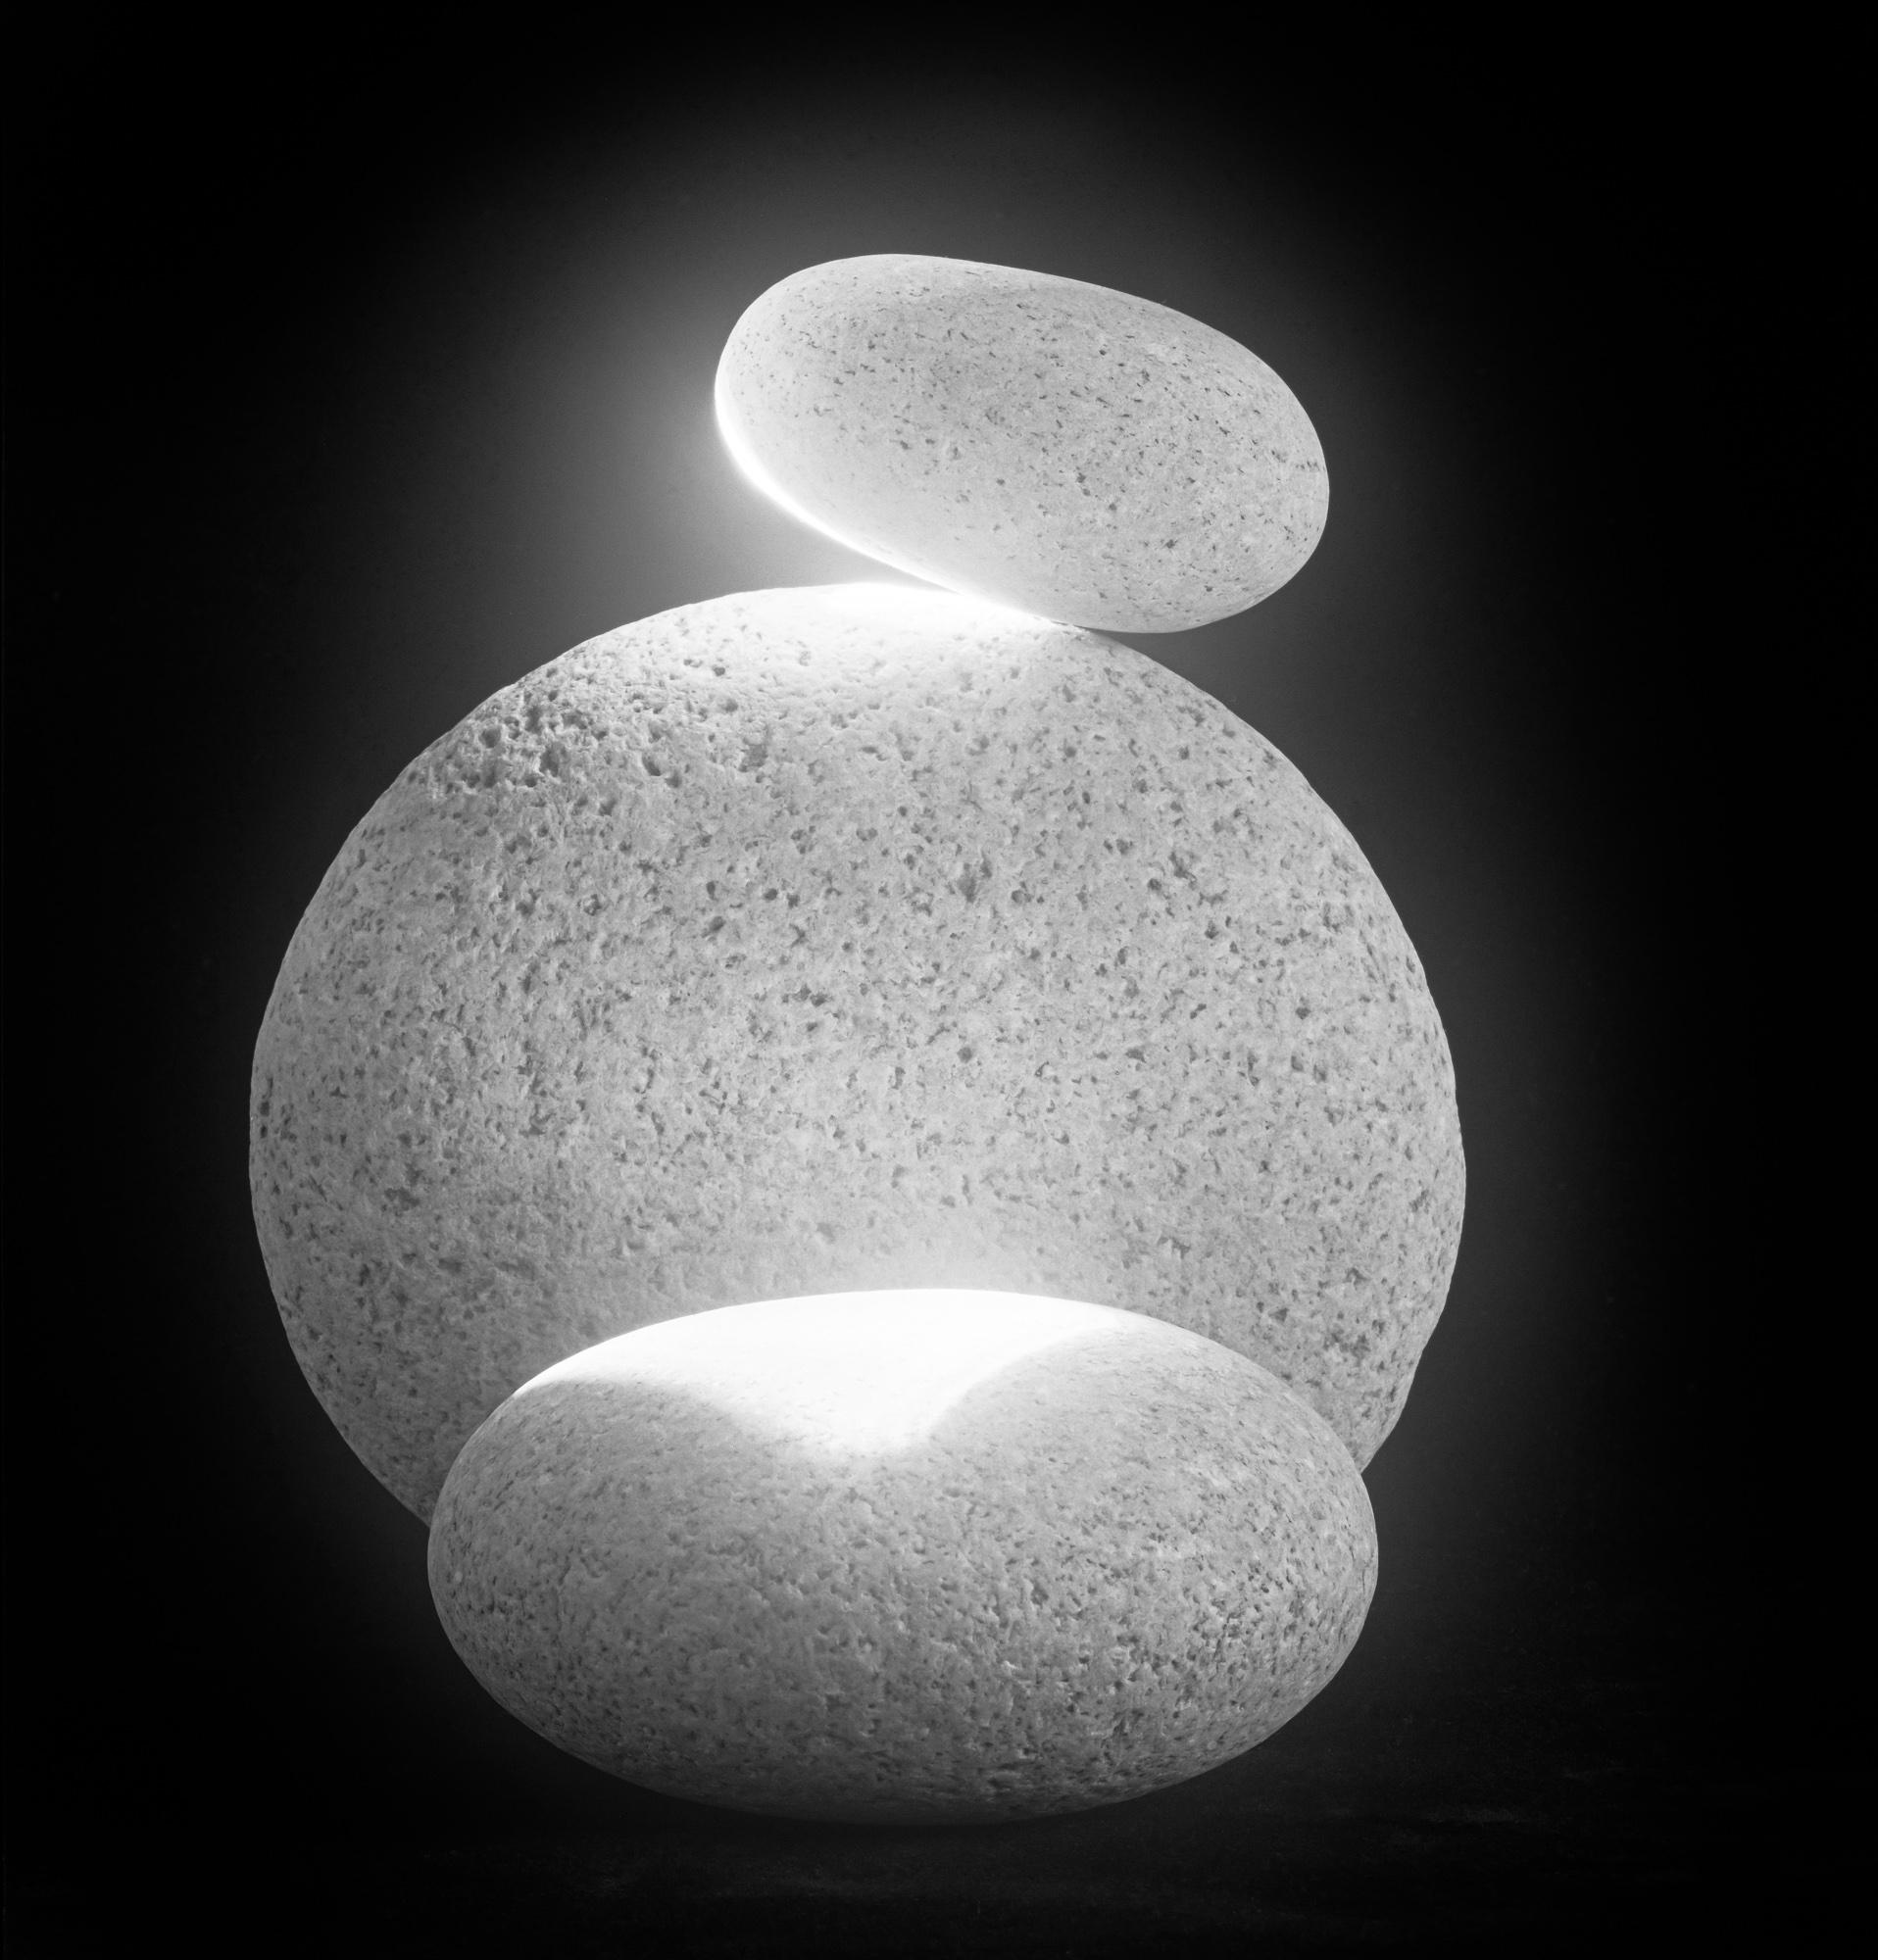  Schwarz-Weiß-Stillleben-Fotografie mit Wassersteinen #13 in limitierter Auflage 